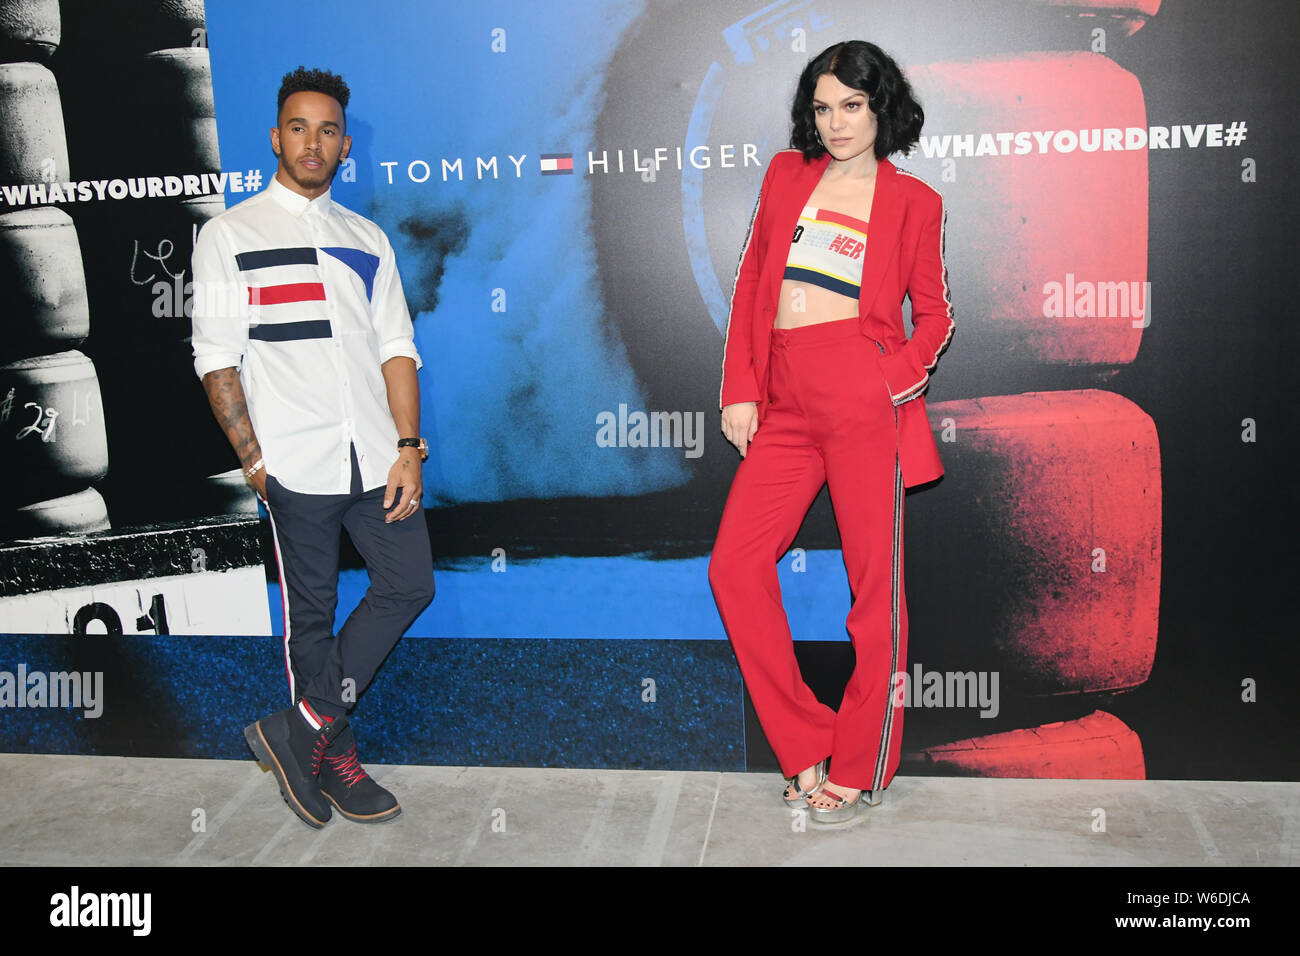 Englische Sängerin Jessie J, rechts, Mercedes-F1-Pilot Lewis Hamilton an  einer Werbeveranstaltung von der Mode der Marke Tommy Hilfiger in Shanghai,  Chi Stockfotografie - Alamy